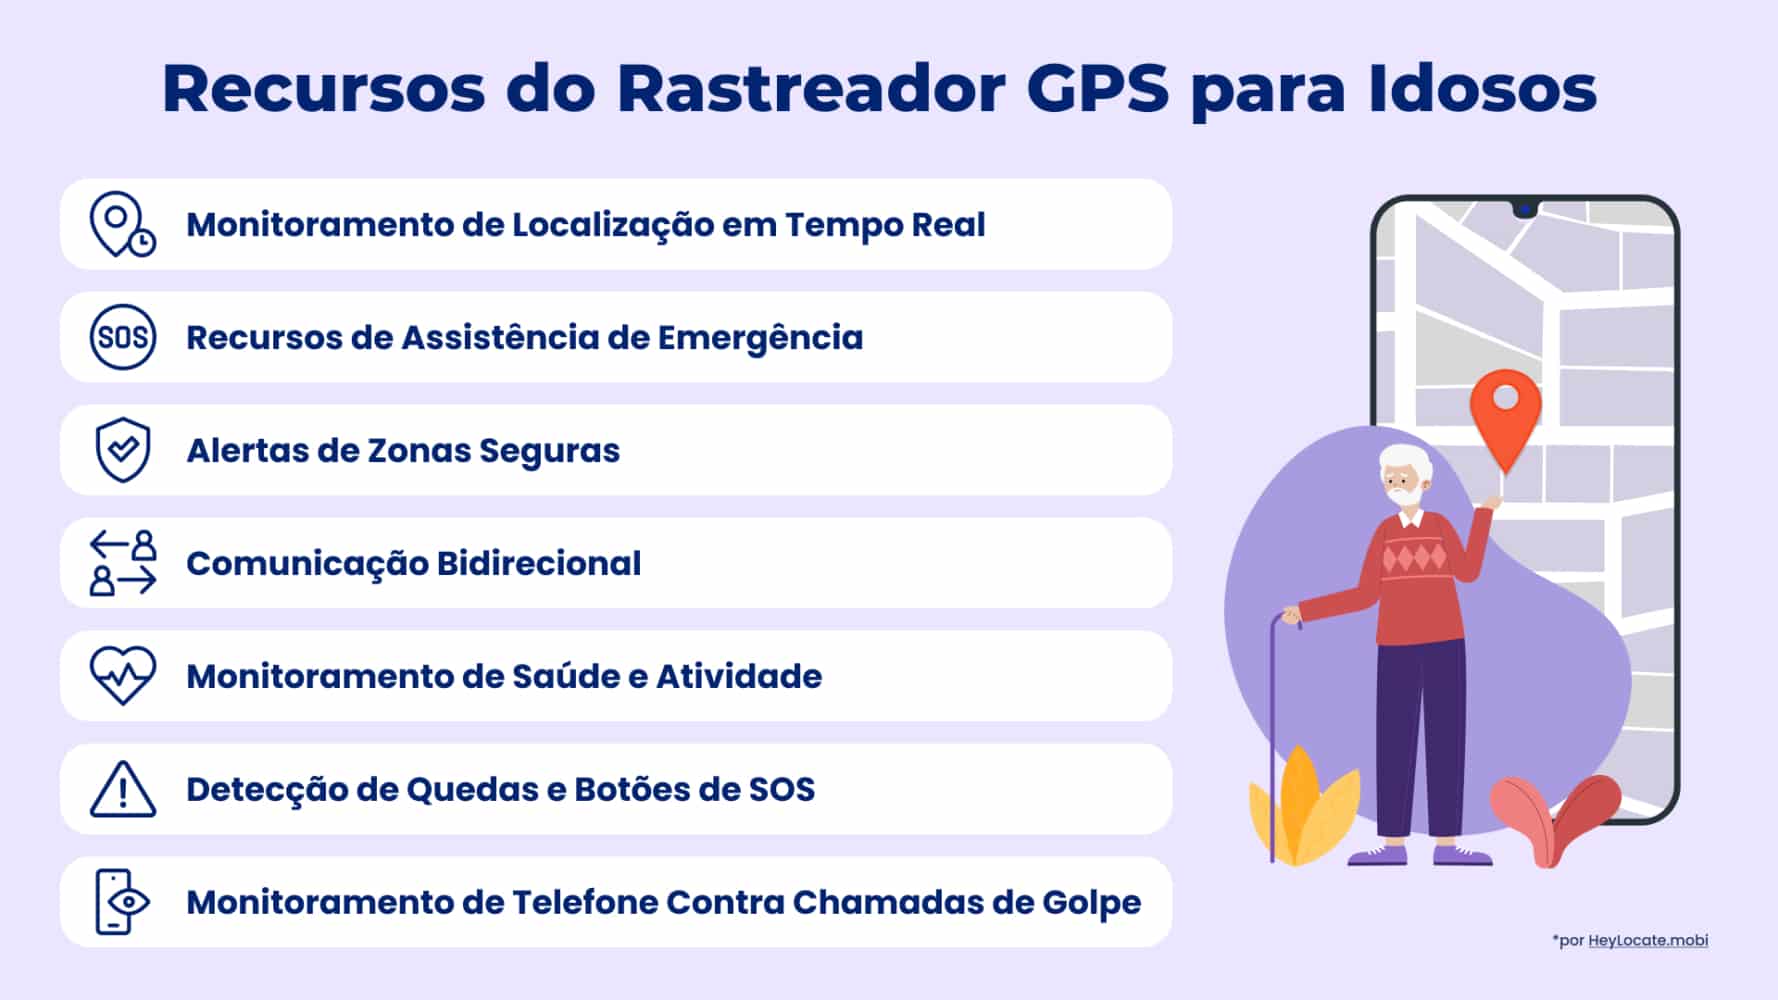 Lista dos principais recursos do rastreador GPS para idosos mostrada no infográfico da HeyLocate
